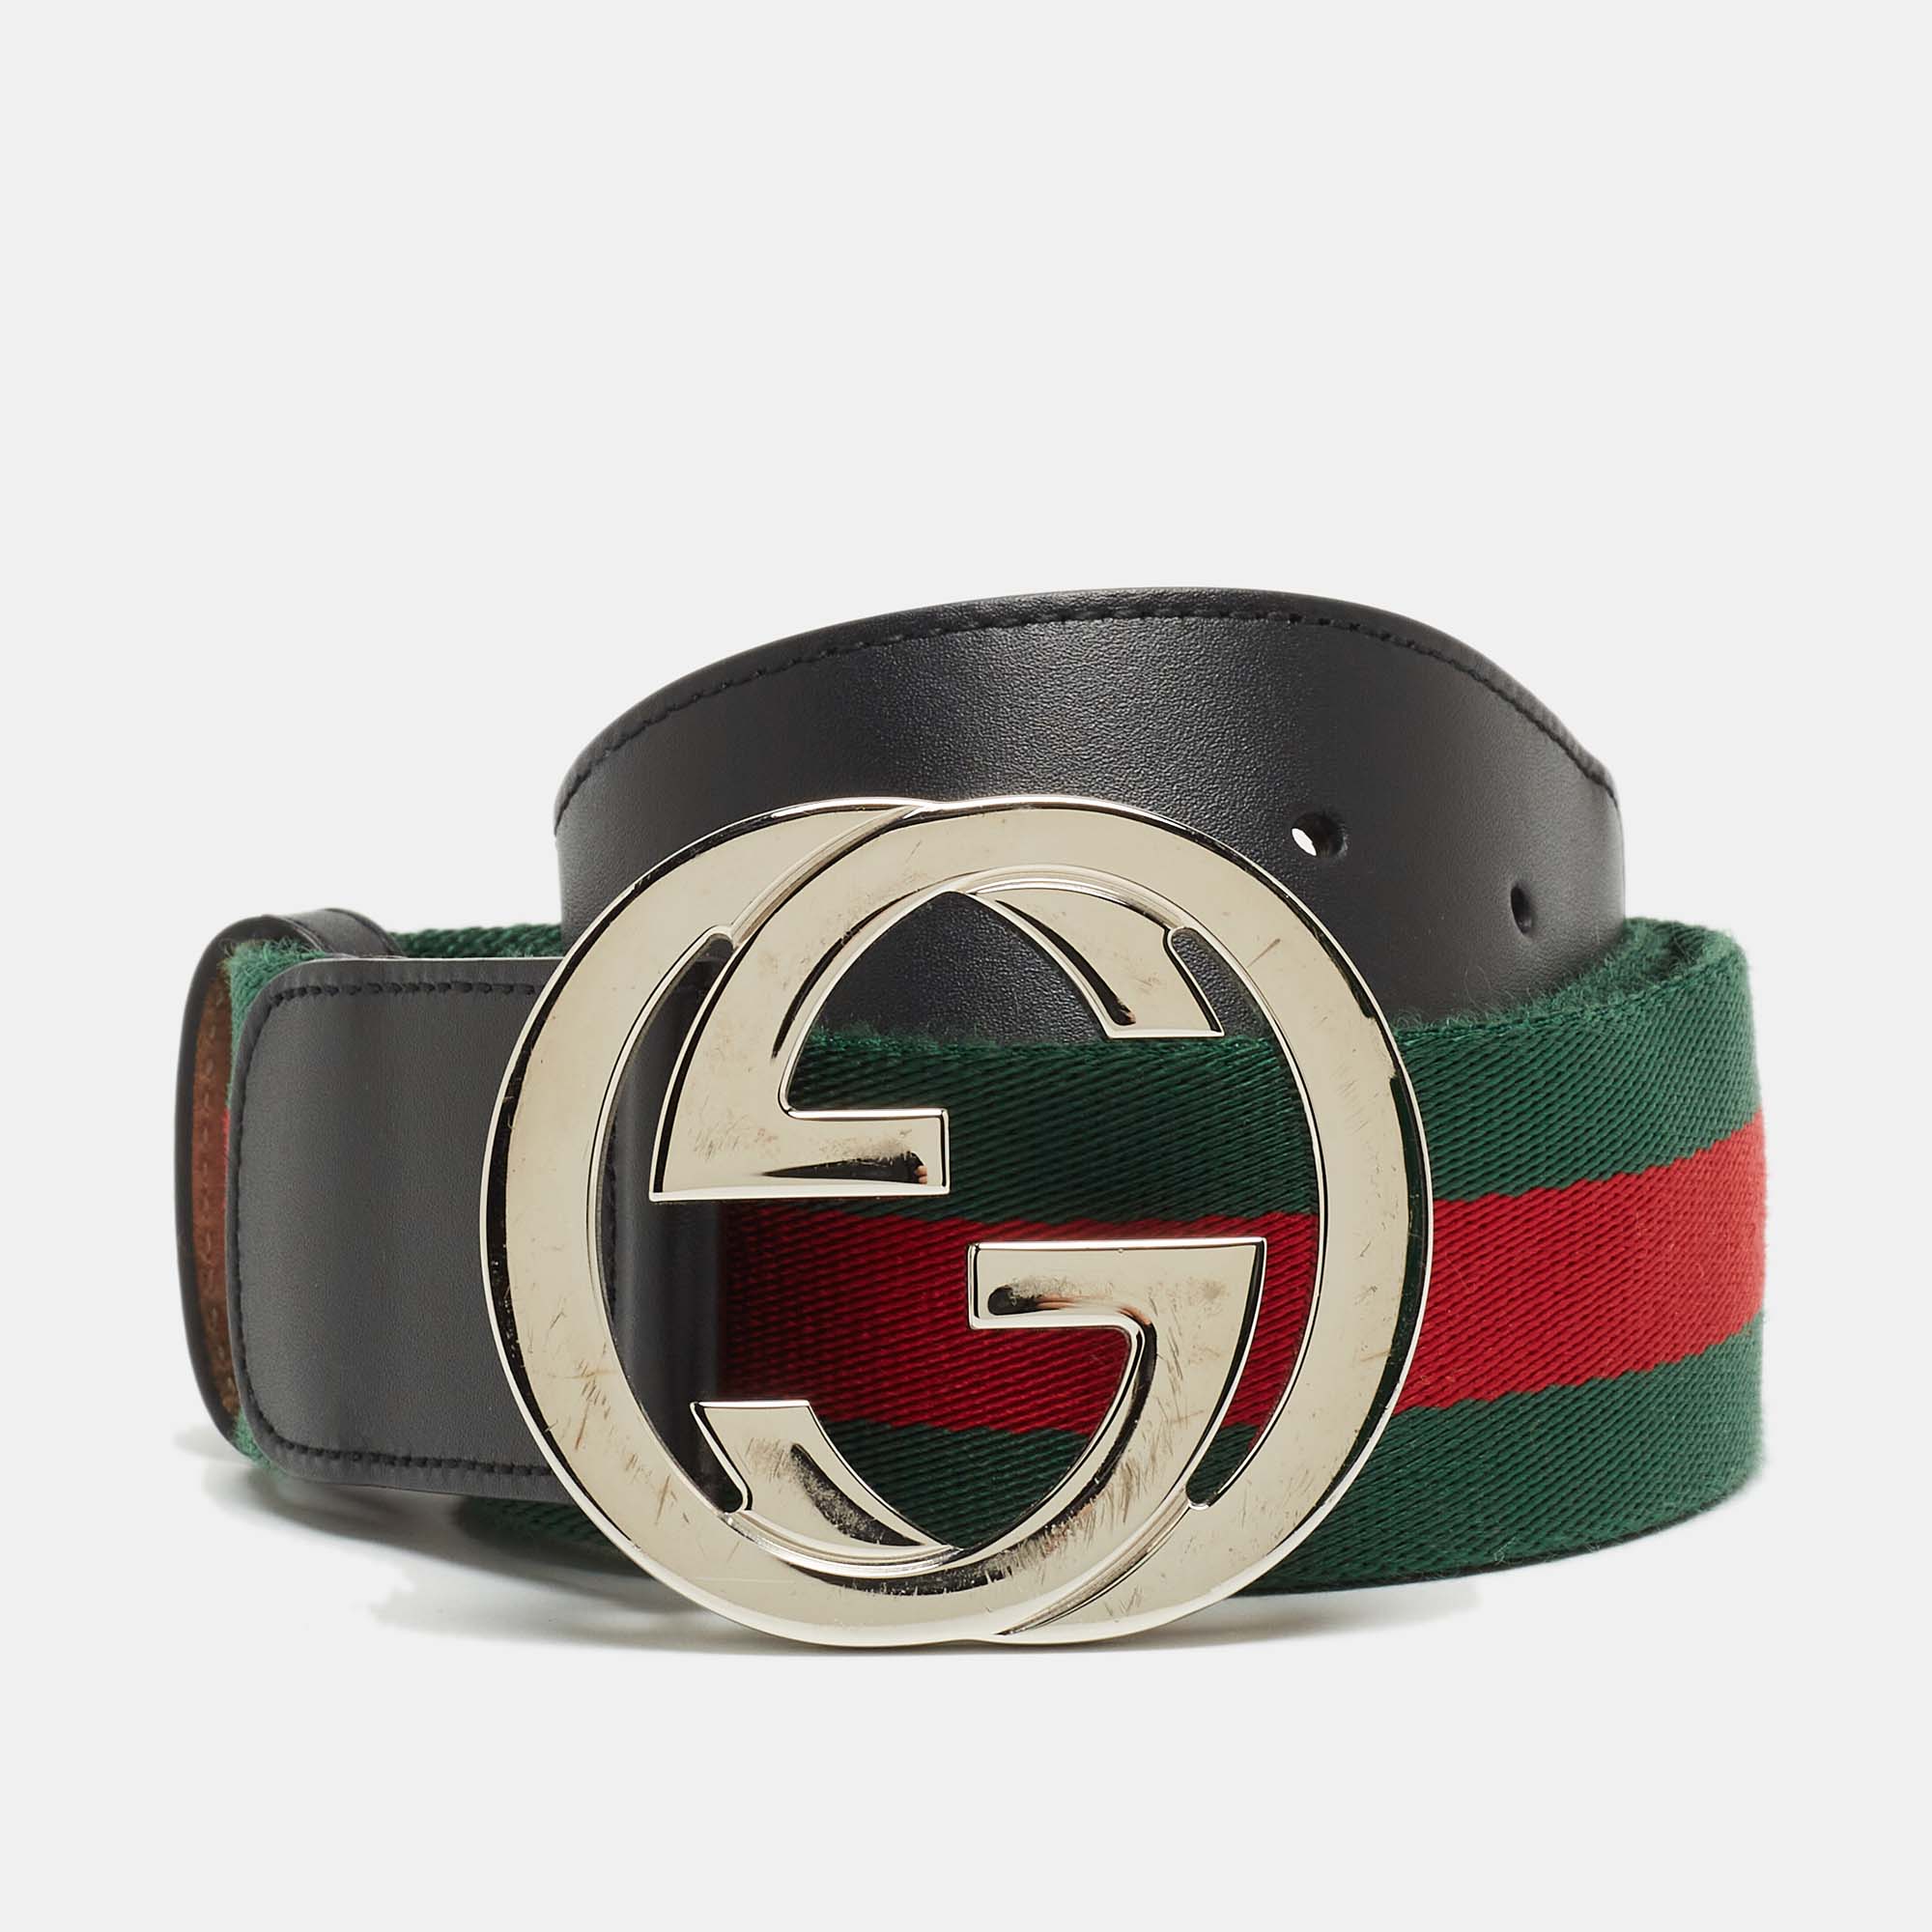 Gucci belt mens 54/135